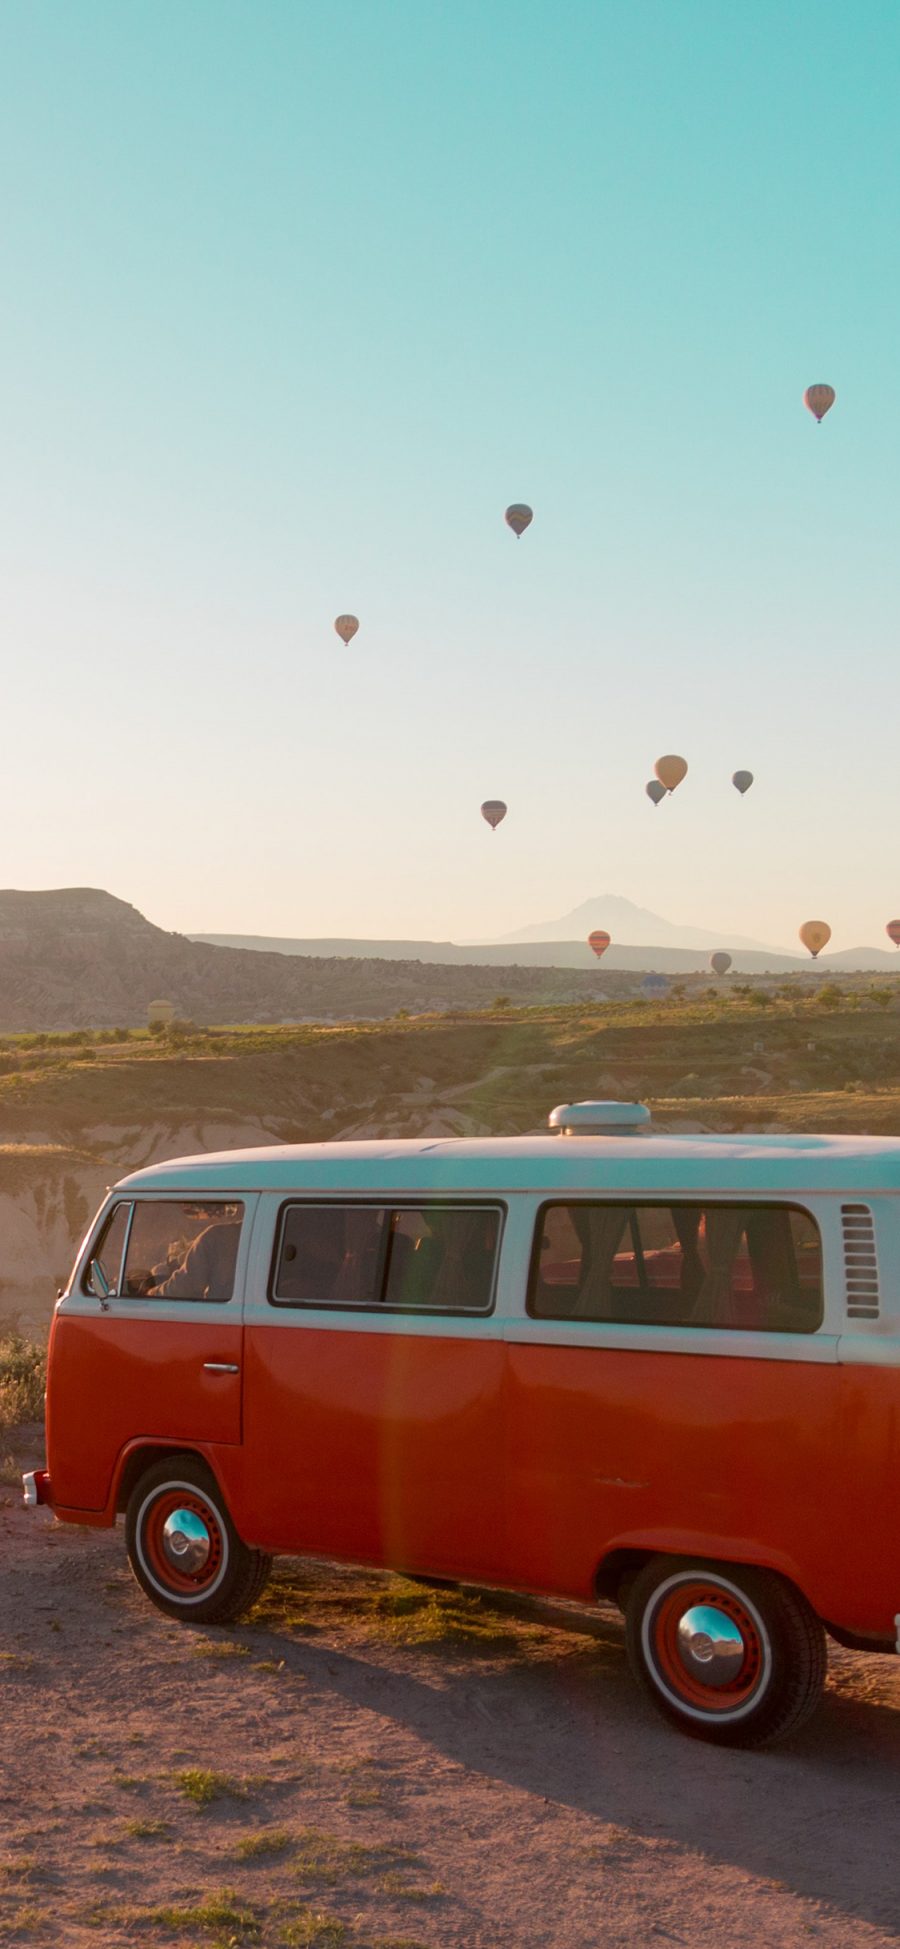 [2436×1125]热气球 旅行 巴士 飞行 苹果手机壁纸图片